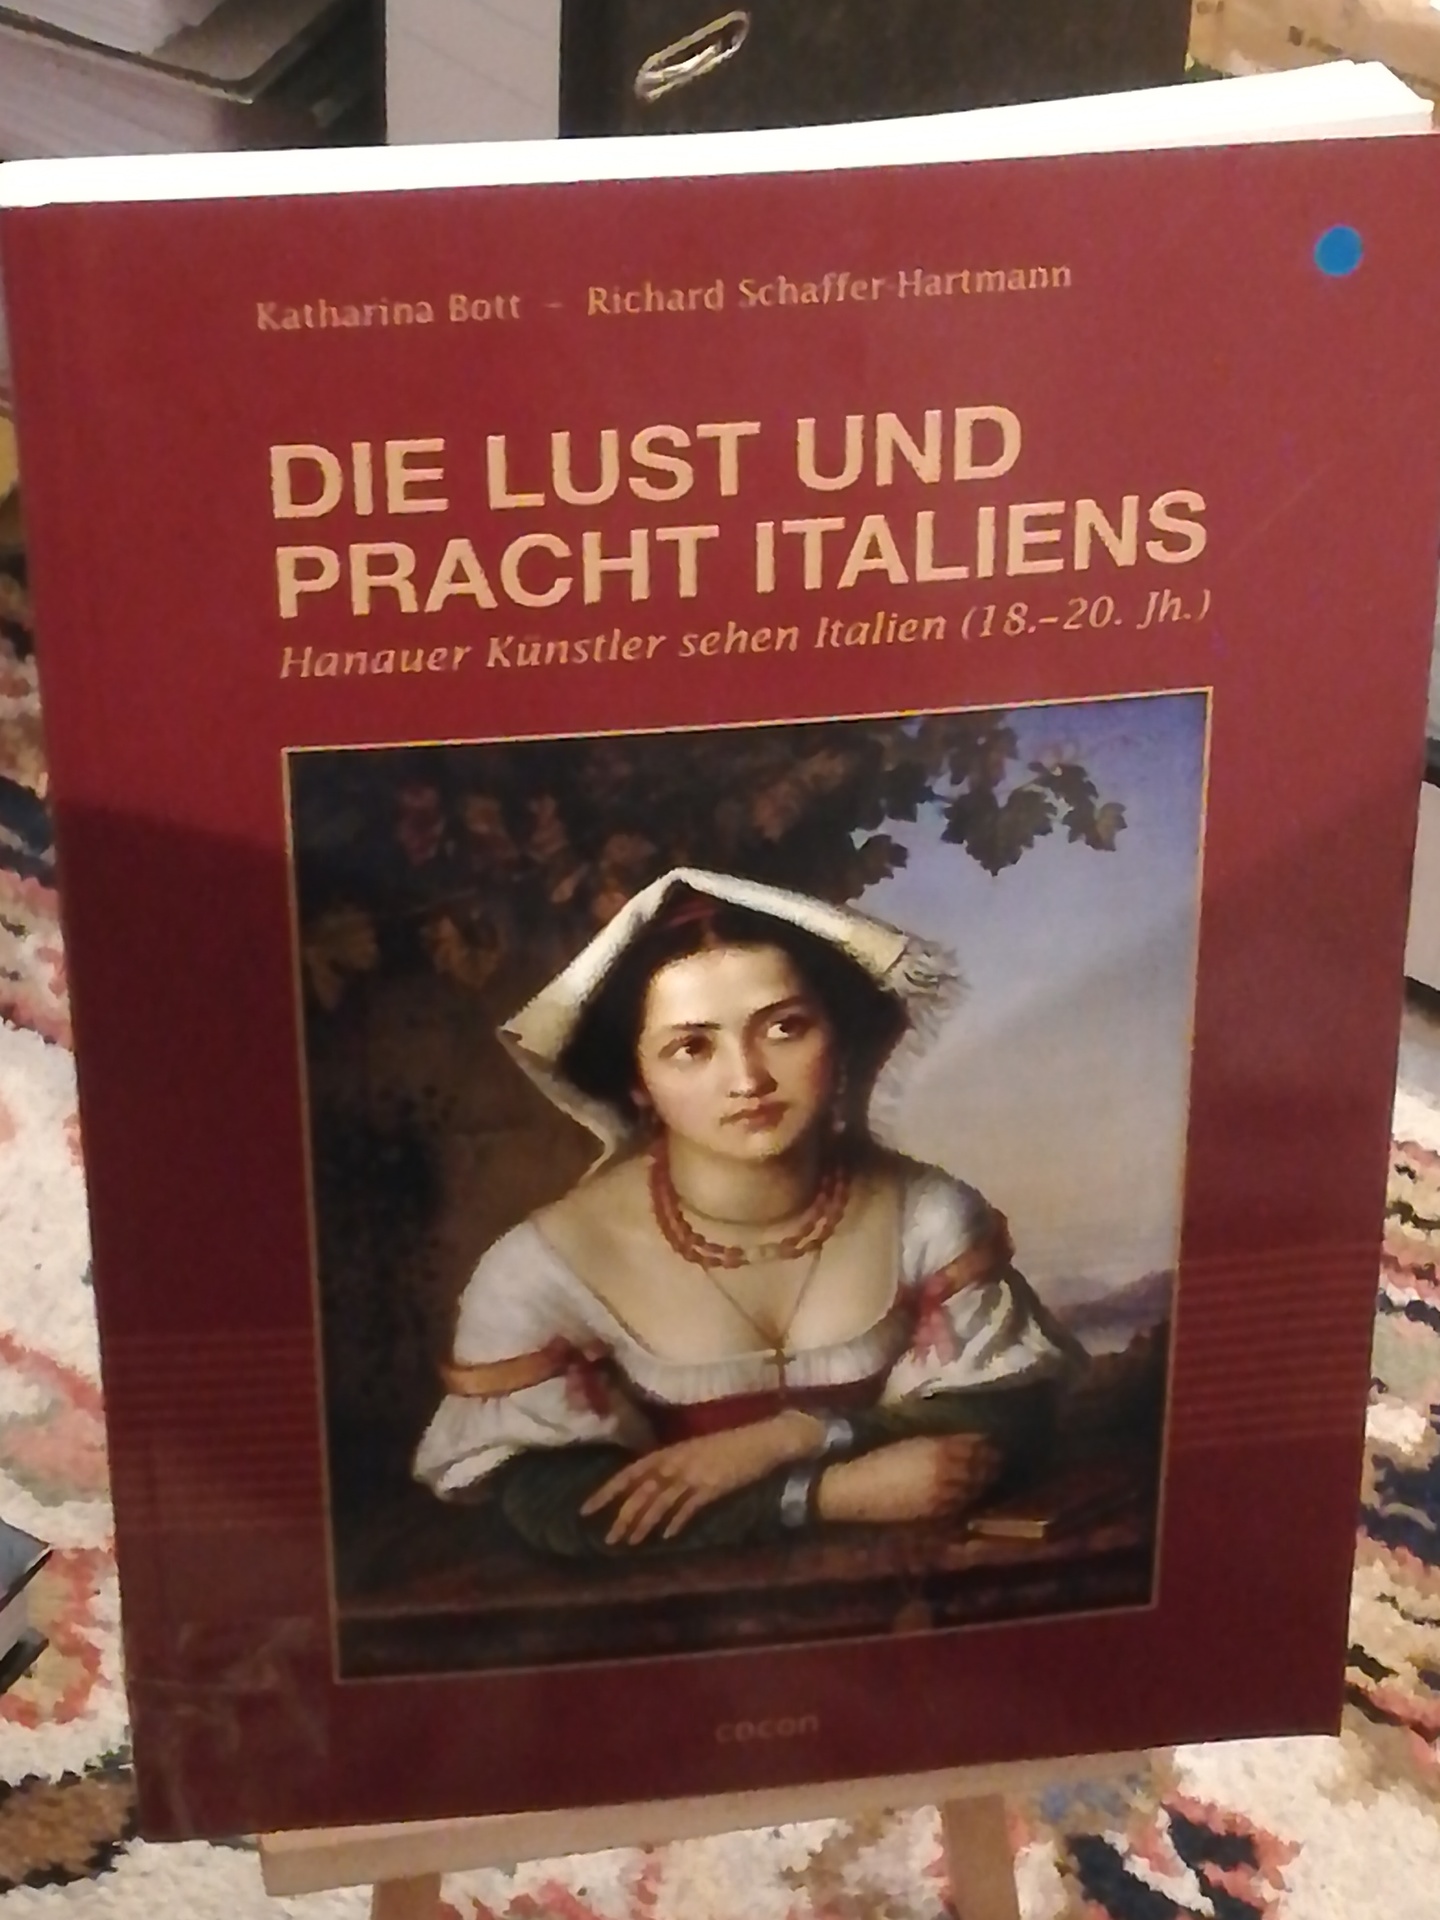 Die Lust und Pracht Italiens, Hanauer Künstler sehen Italien (18. - 20. Jh.) - Bott Katharina, Schaffer-Hartmann